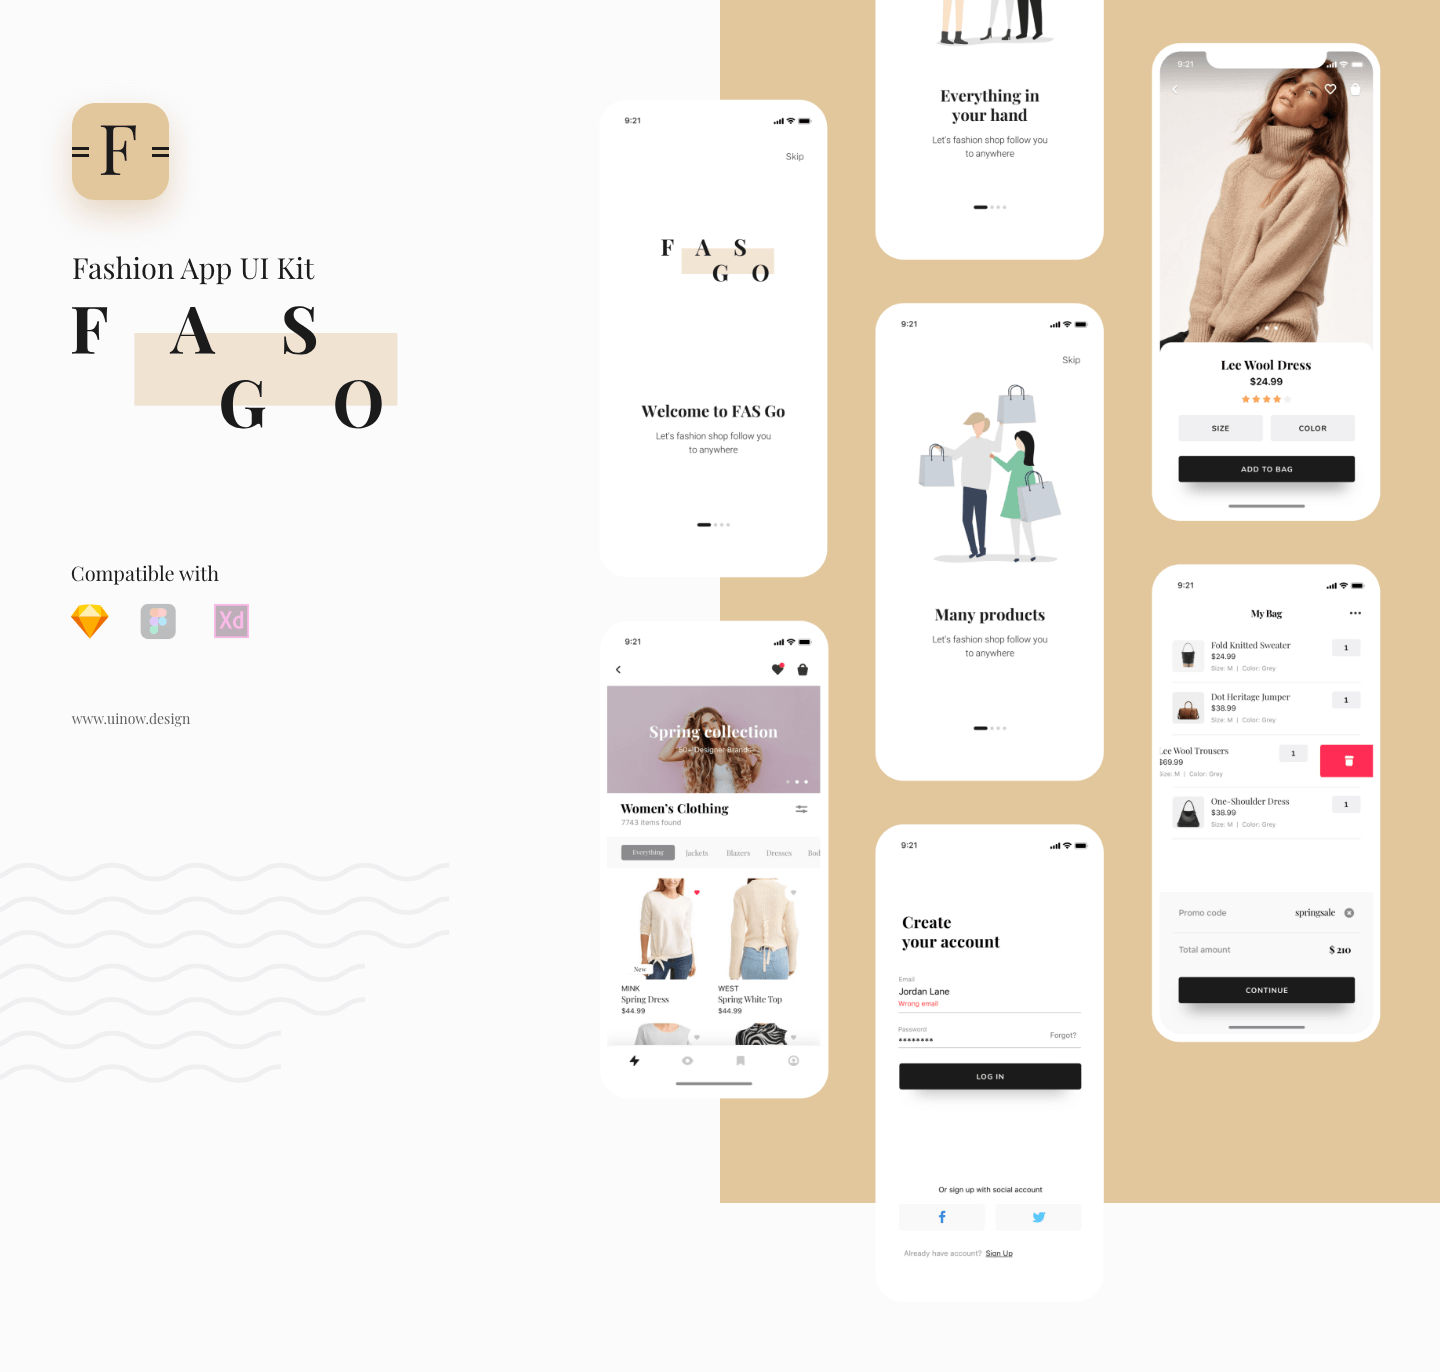 F A S G O - Fashion App UI Kit on Behance